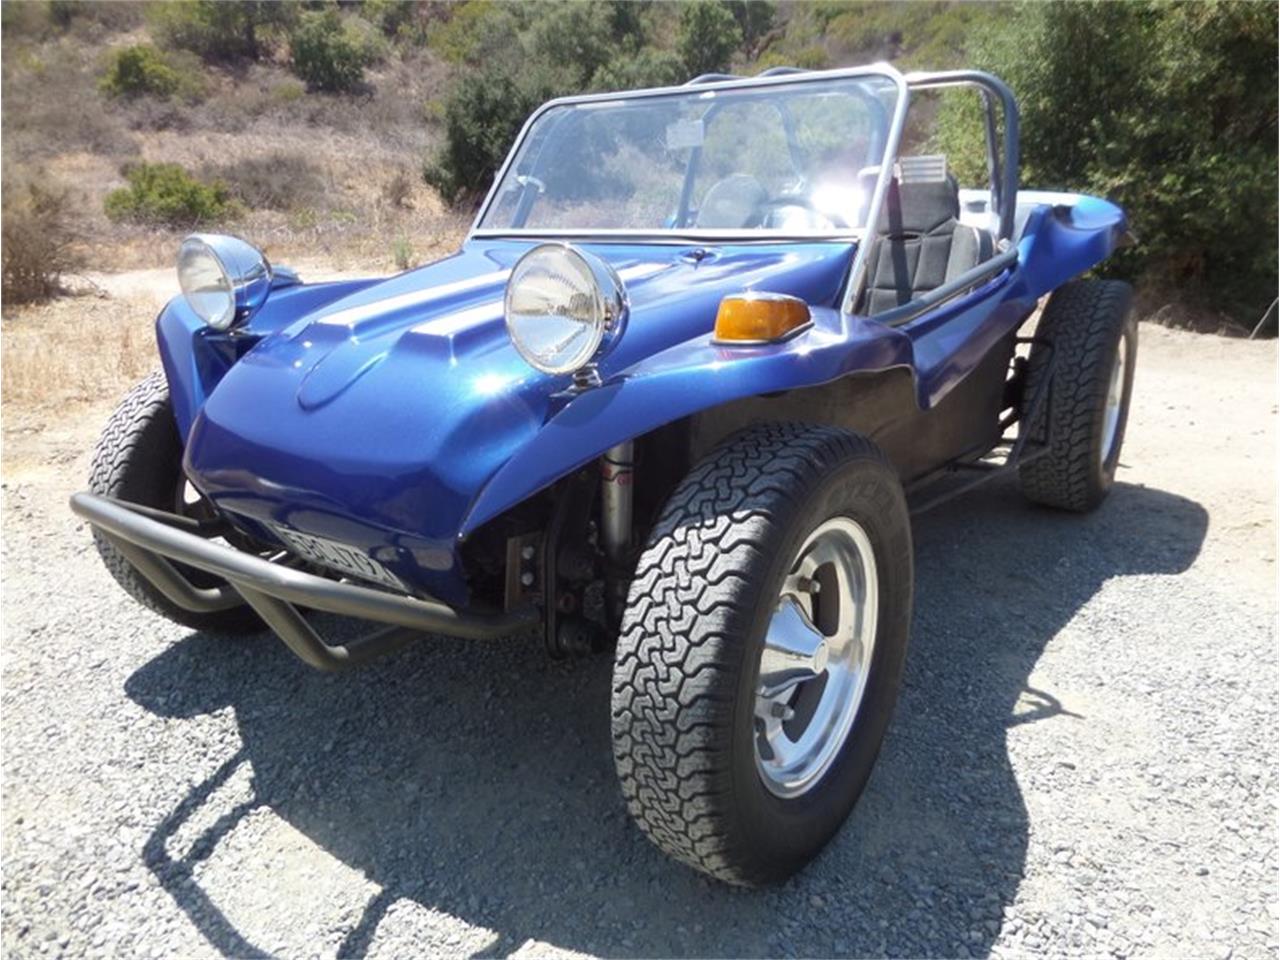 For Sale: 1967 Volkswagen Dune Buggy in Laguna Beach, California.